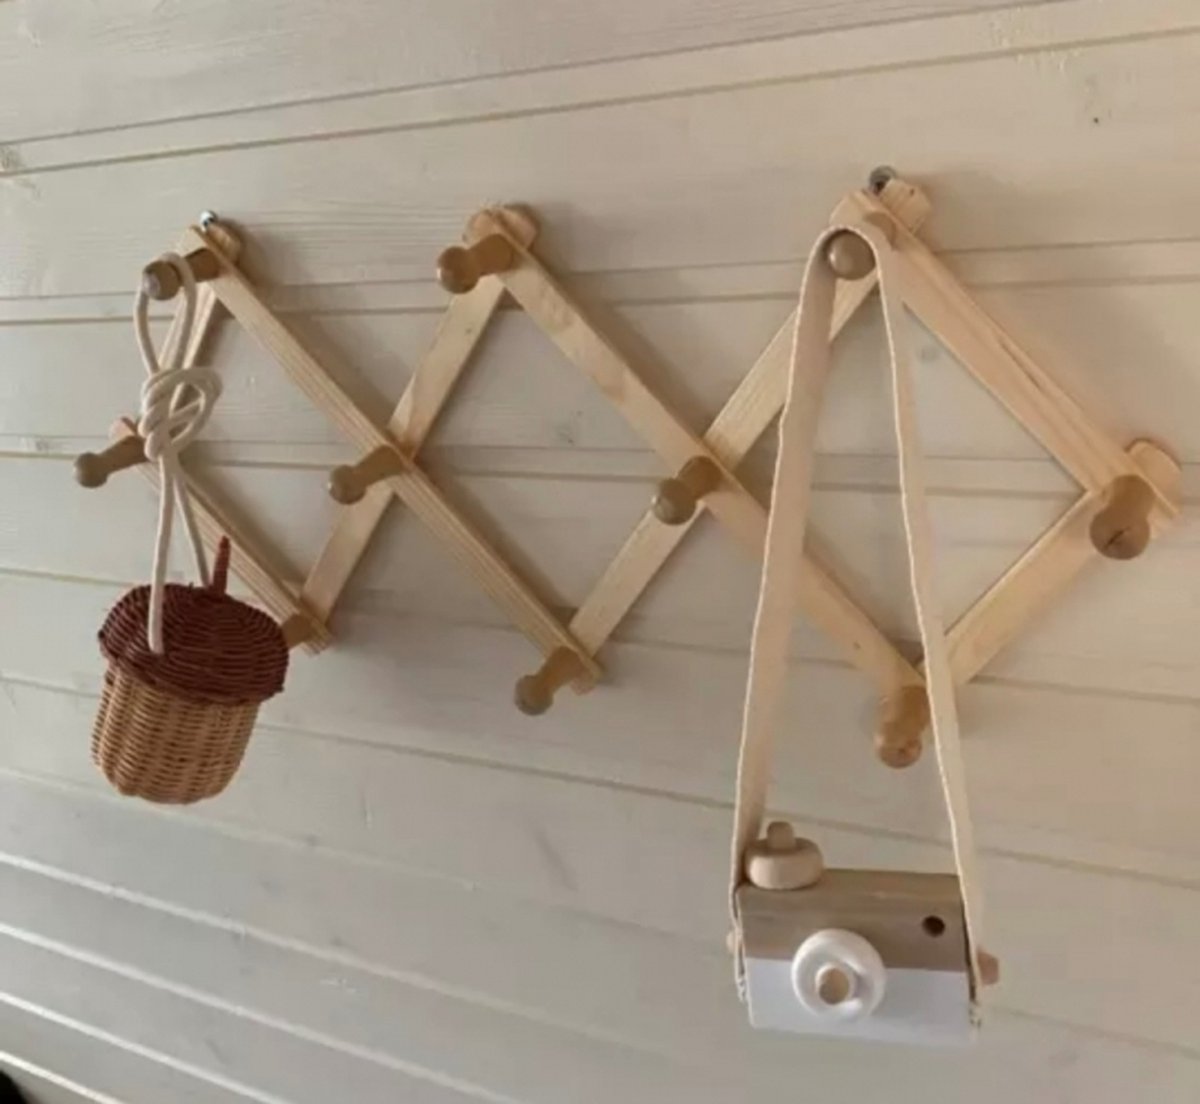 Harmonica Kapstok - Kinderkamer - Babykamer - Gevouwen kapstok van hout - Nordic / Scandinavische stijl